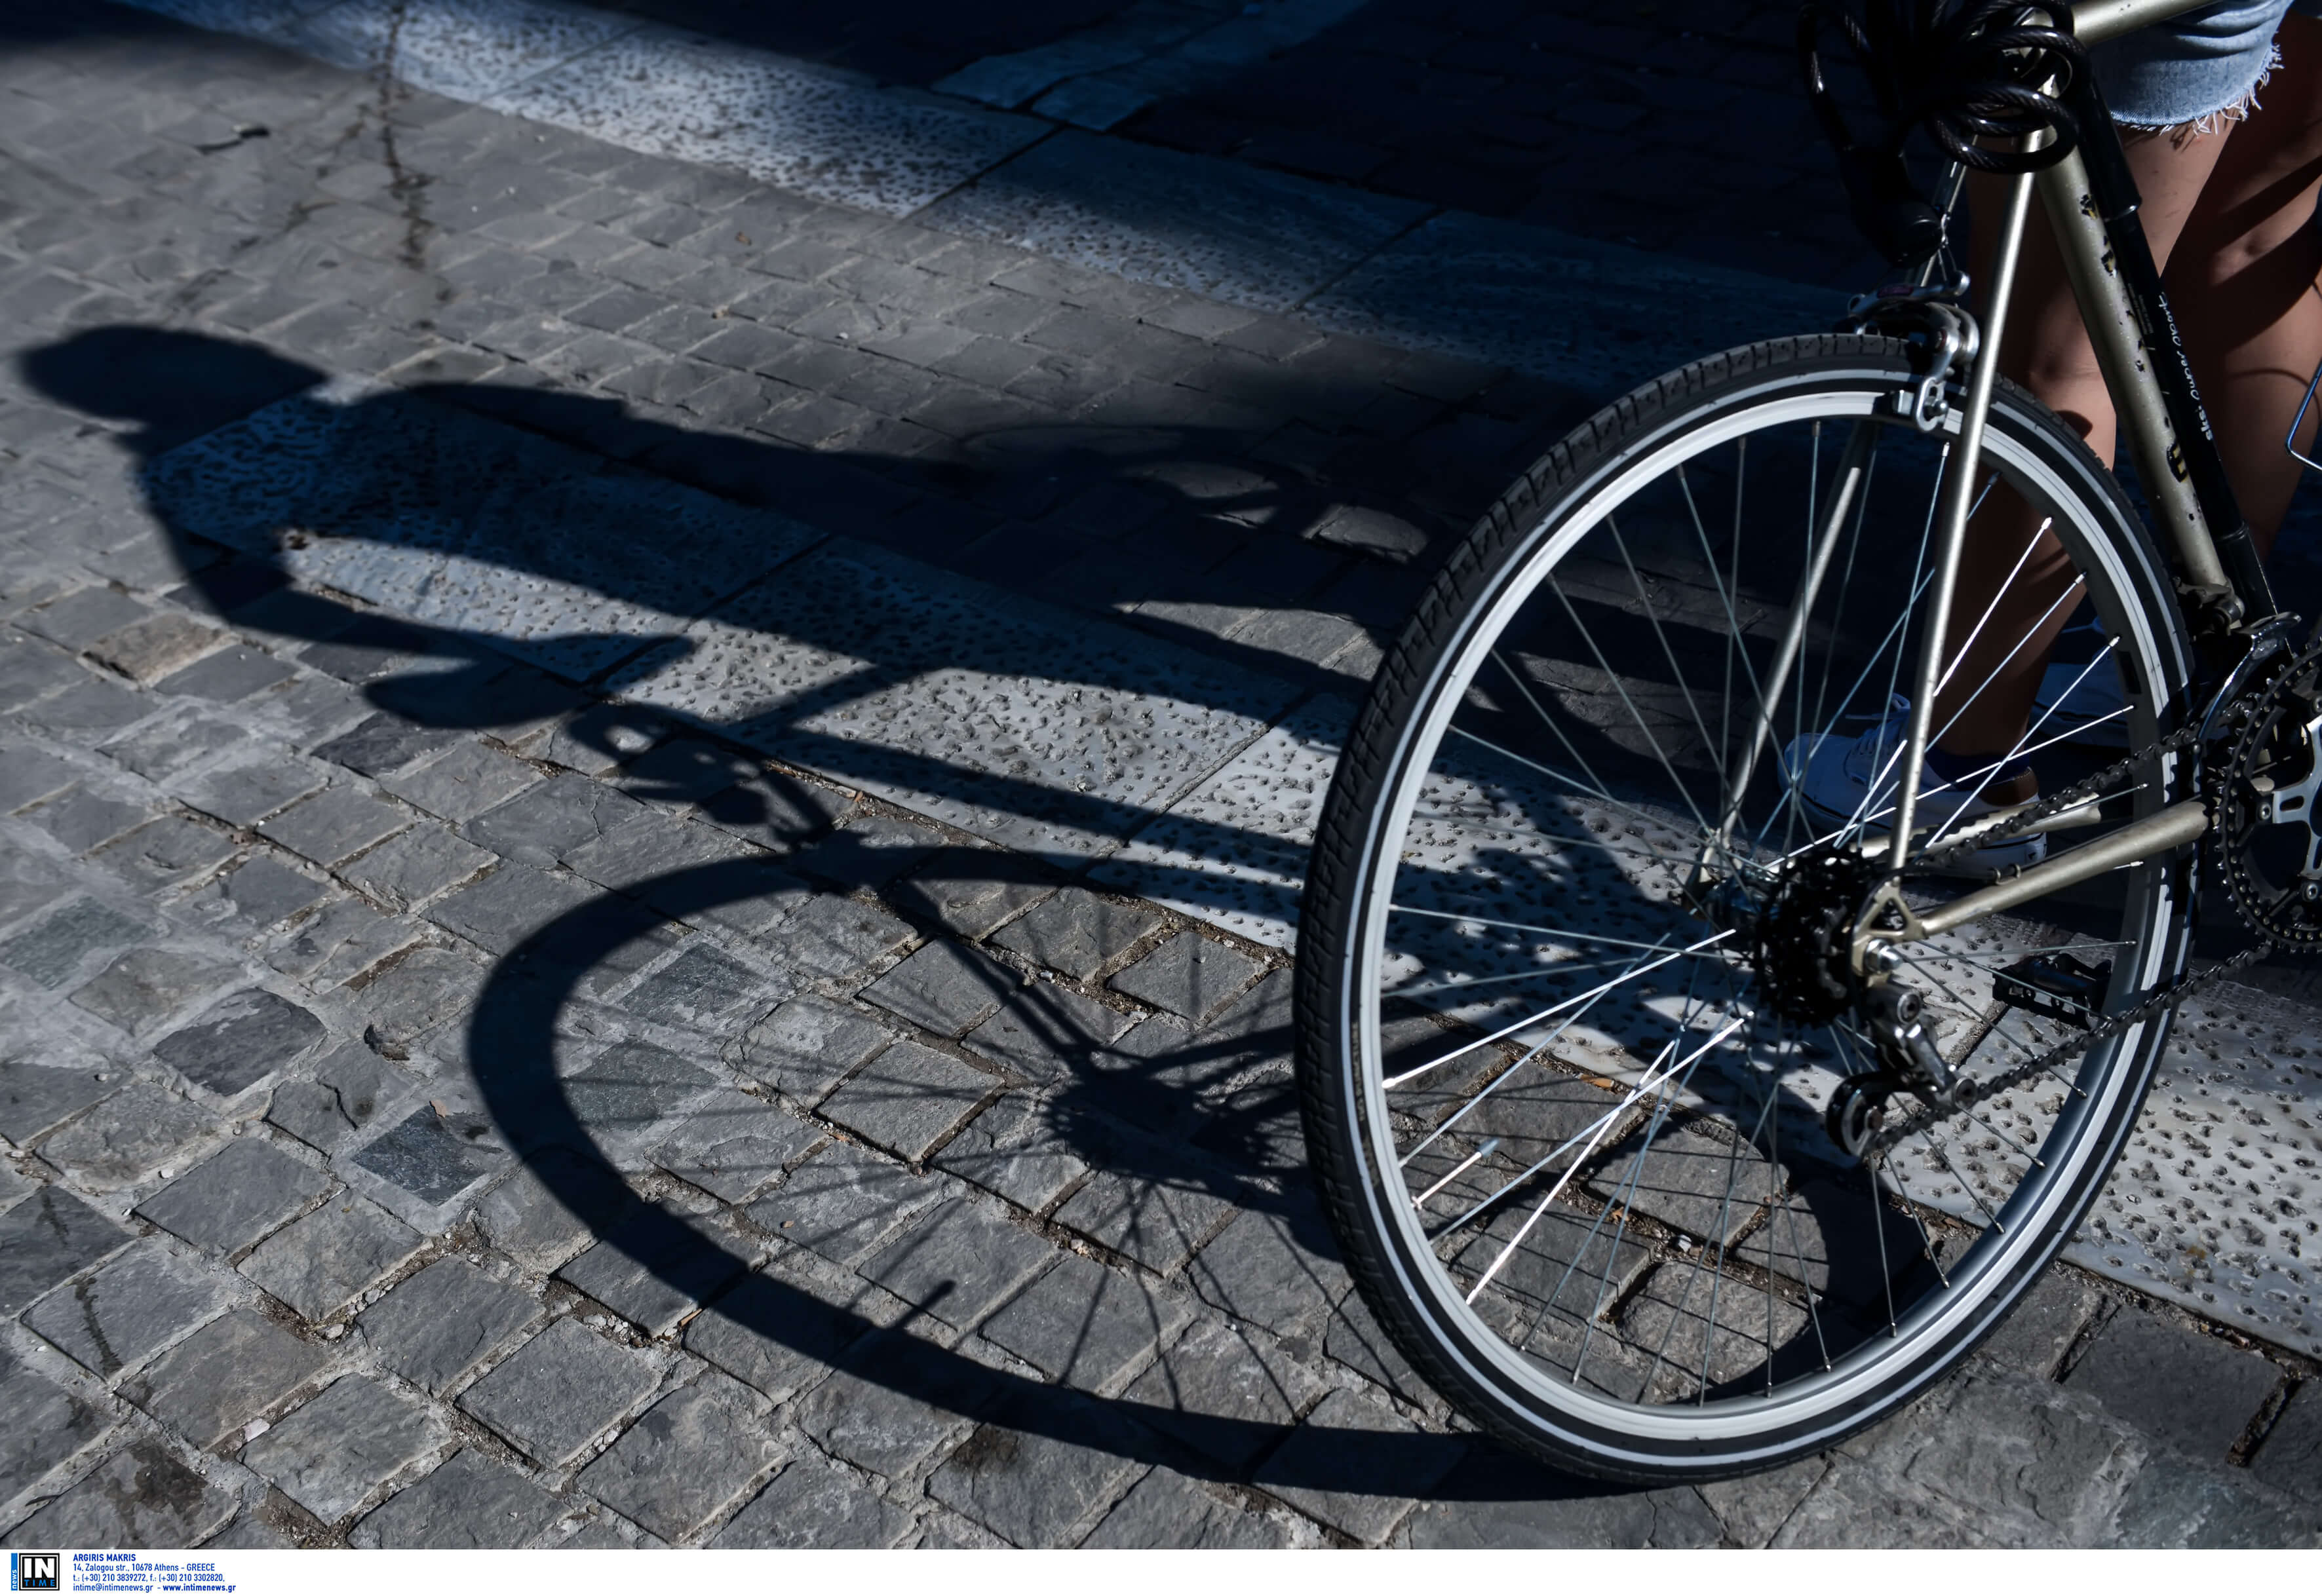 Θεσσαλονίκη: Σοβαρό ατύχημα μετά από πτώση 12χρονου παιδιού από το ποδήλατο που οδηγούσε